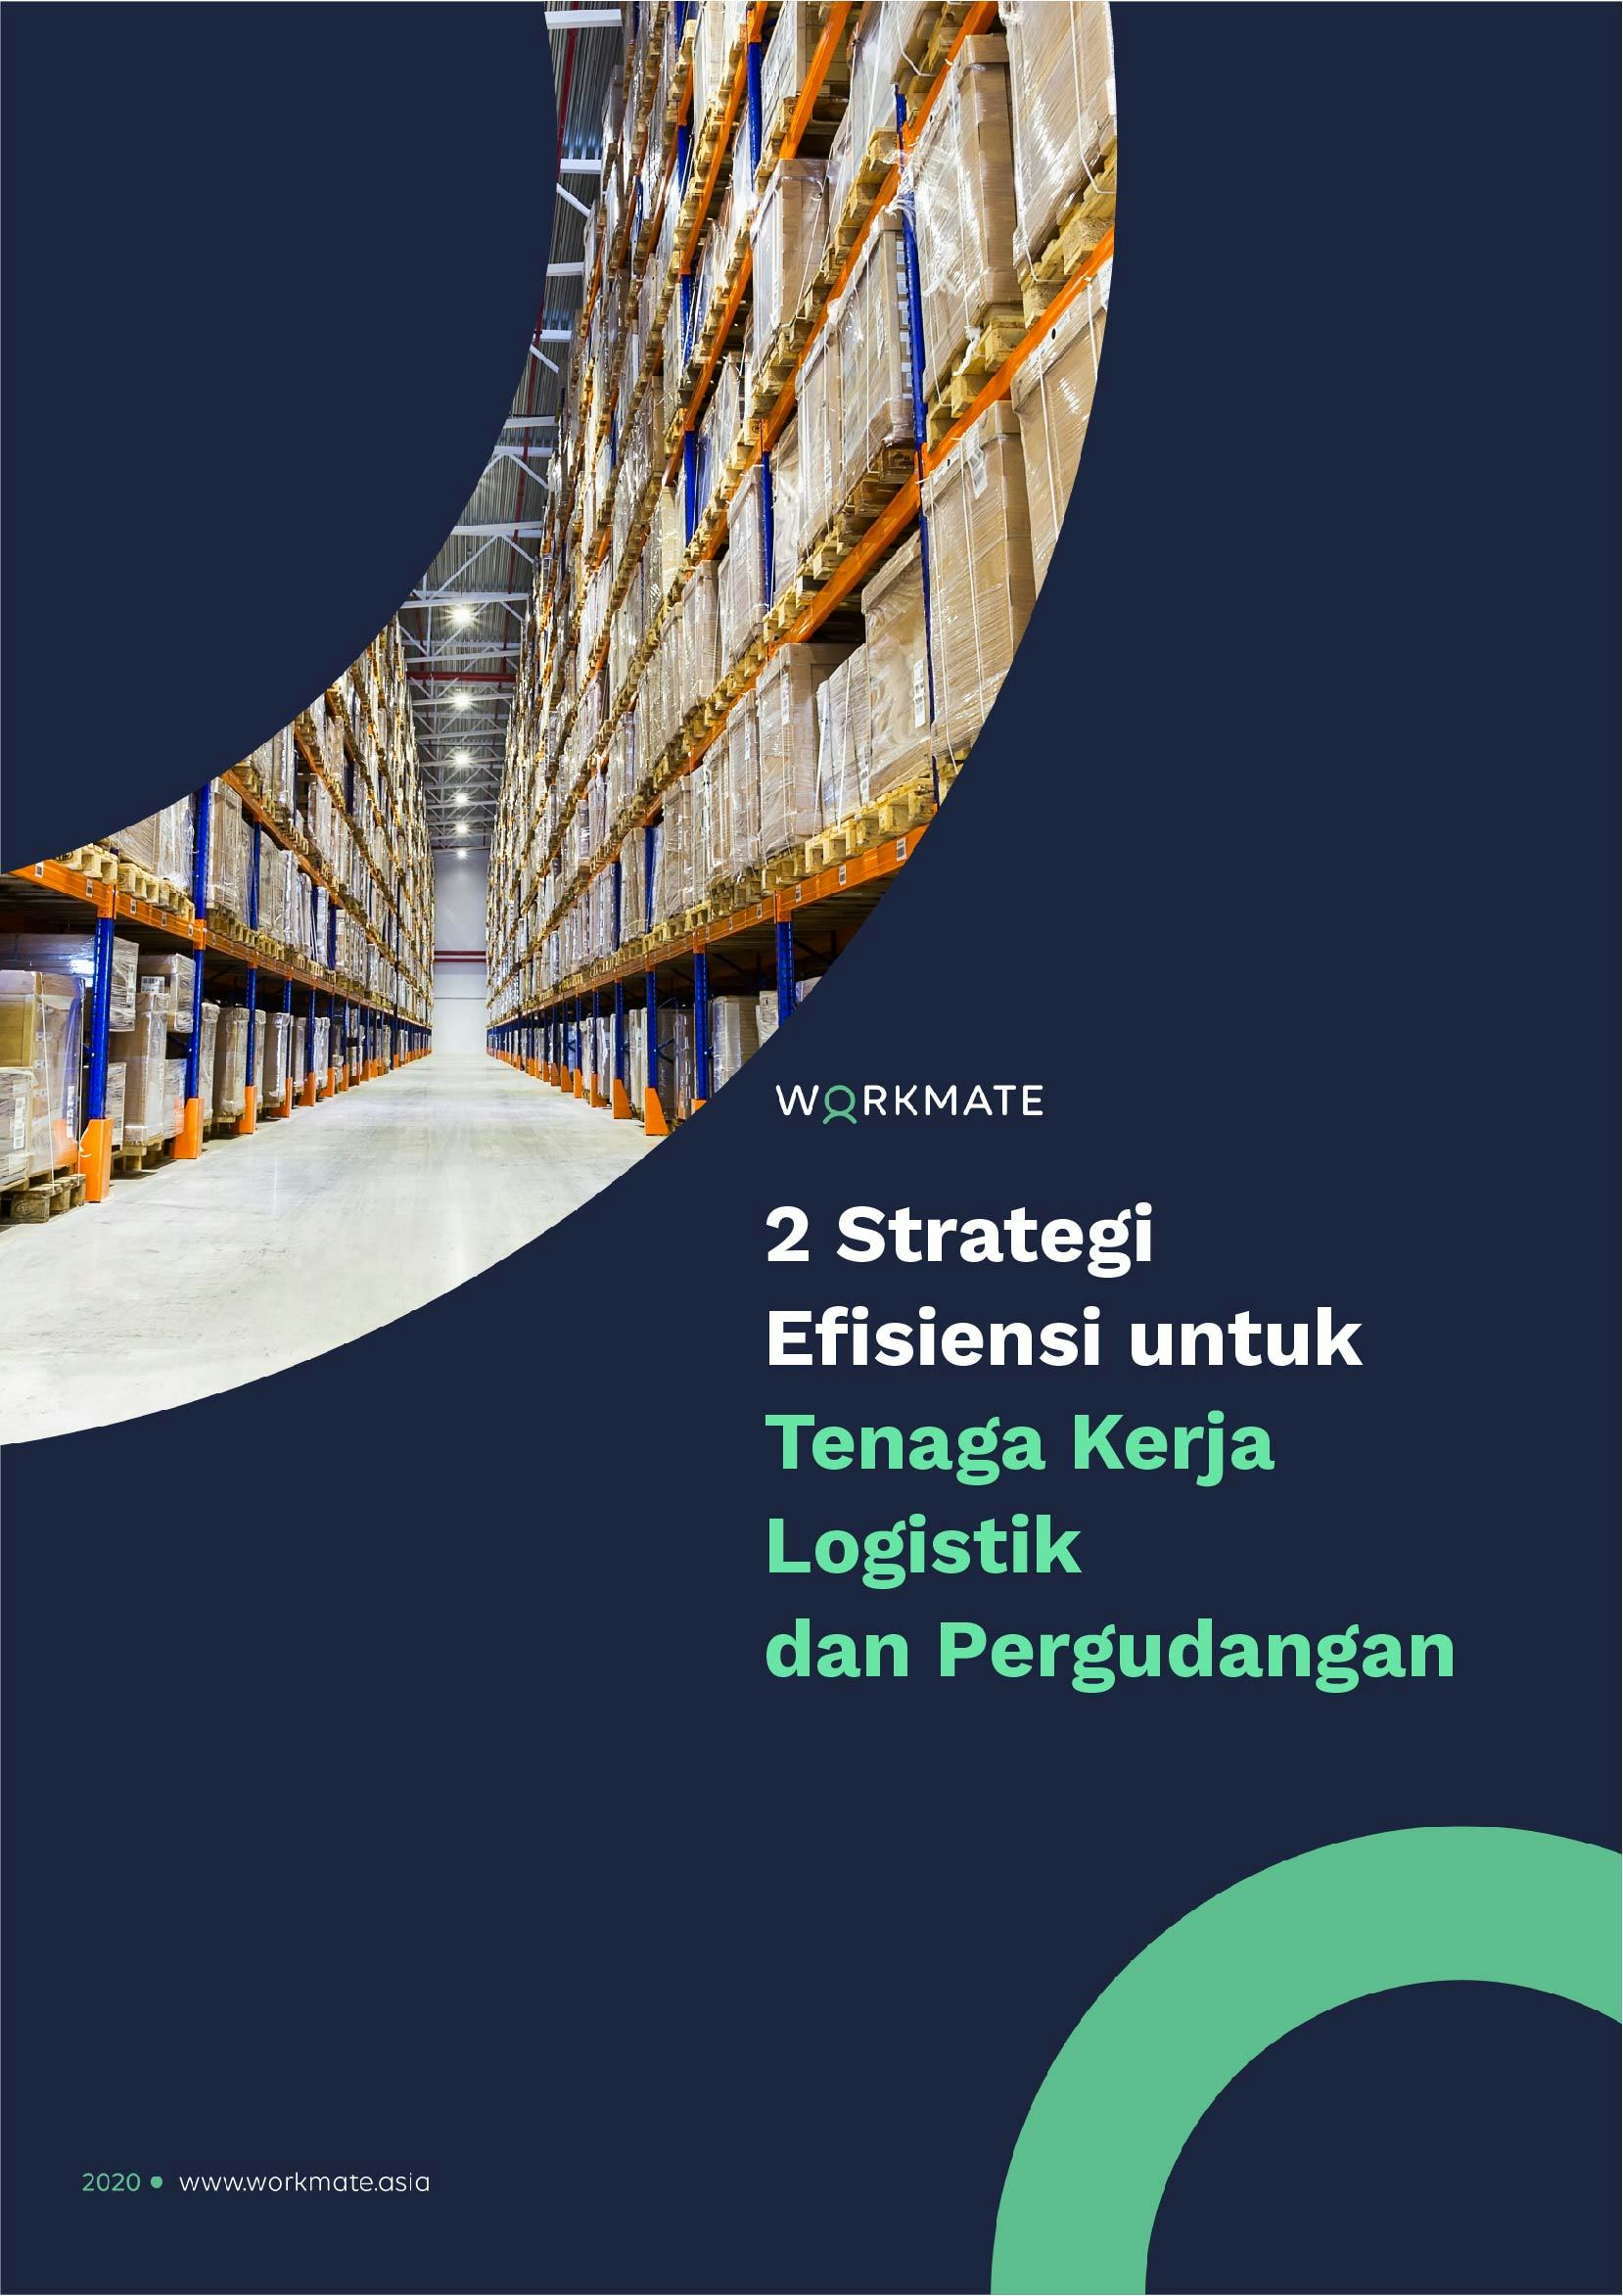 2 Strategi Efisiensi untuk Tenaga Kerja Logistik dan Pergudangan - Workmate Indonesia